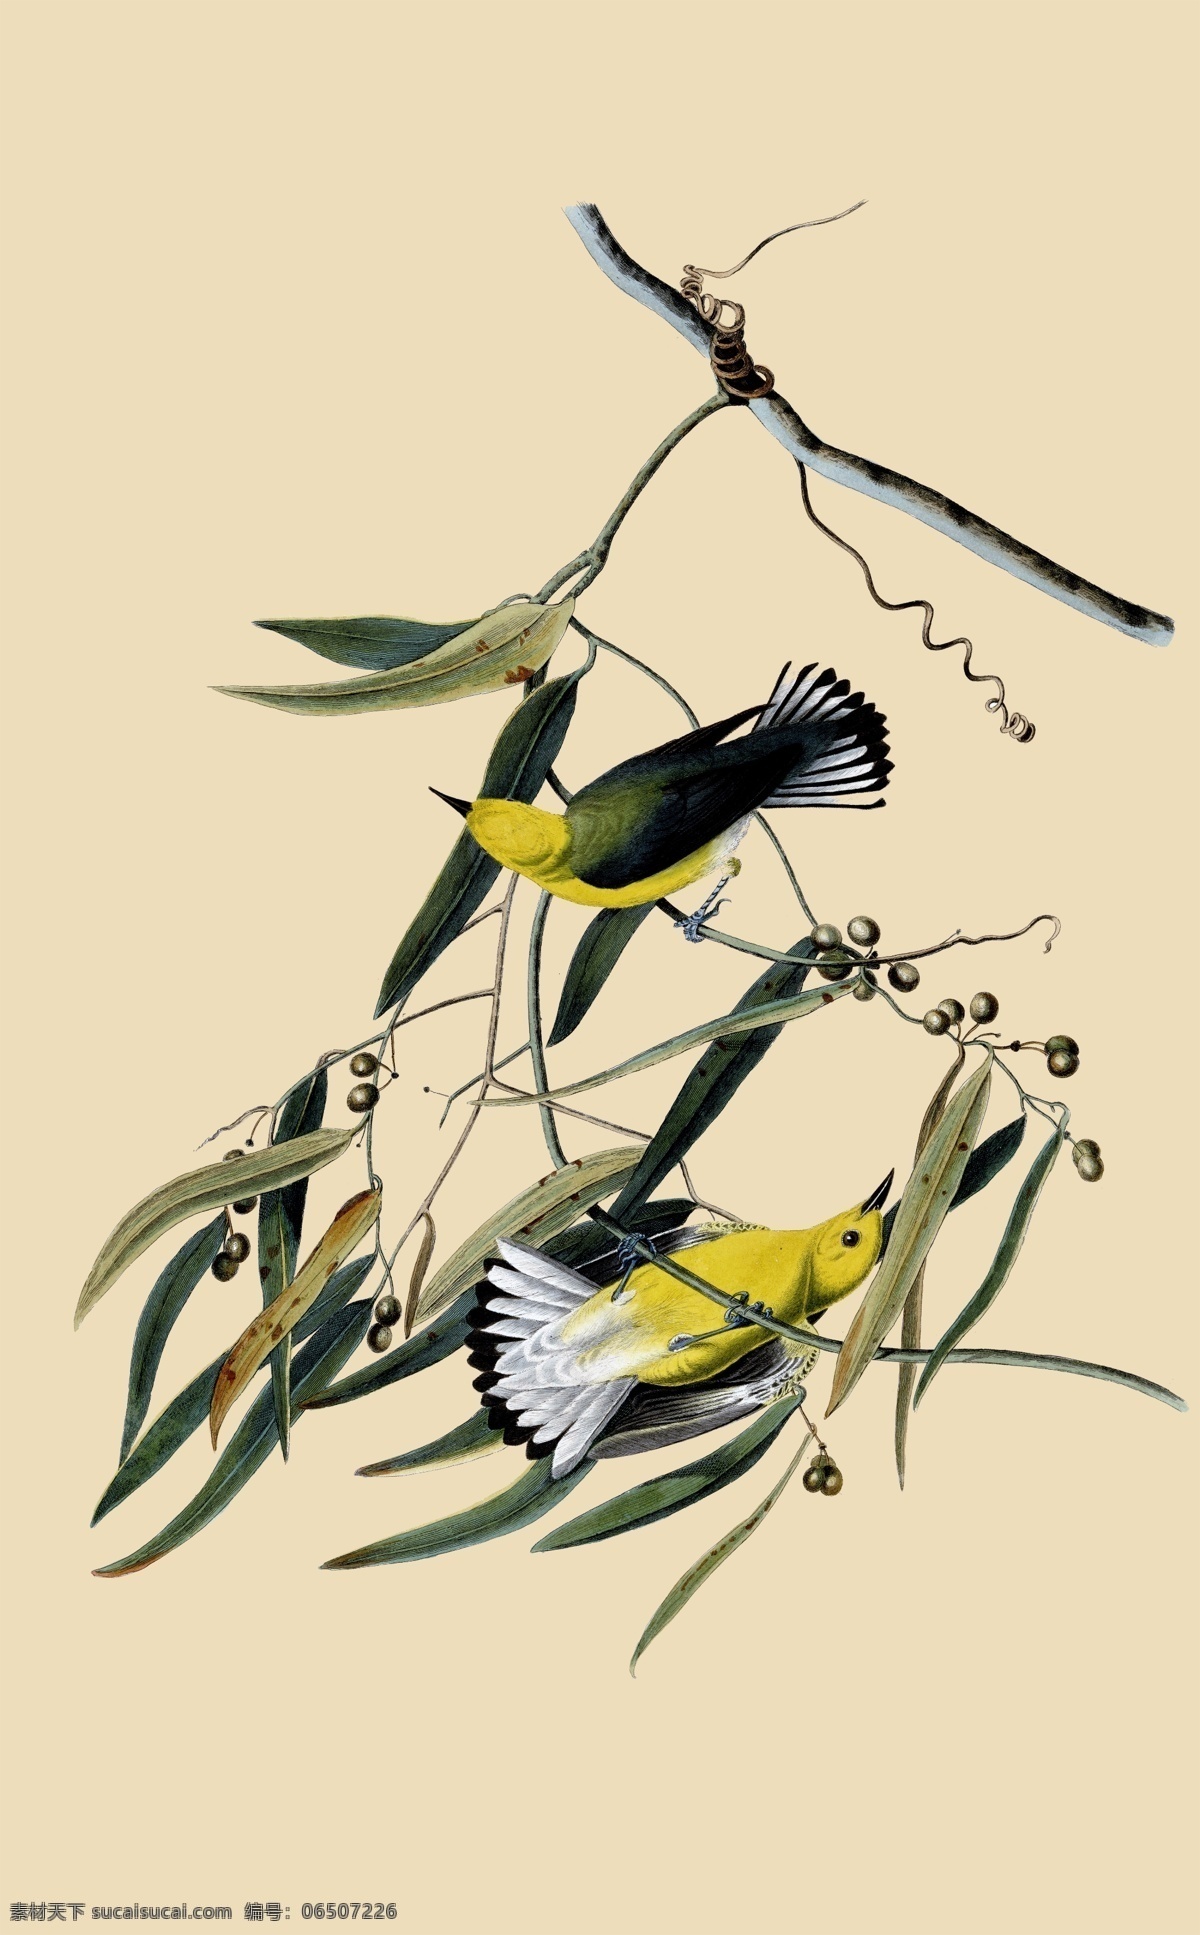 鸟类分层 鸟类 美国鸟类 手绘 花鸟 鸟儿 鸟 禽类 西方图谱 植物 贝拉贝罗 鸟类素材 分层 源文件